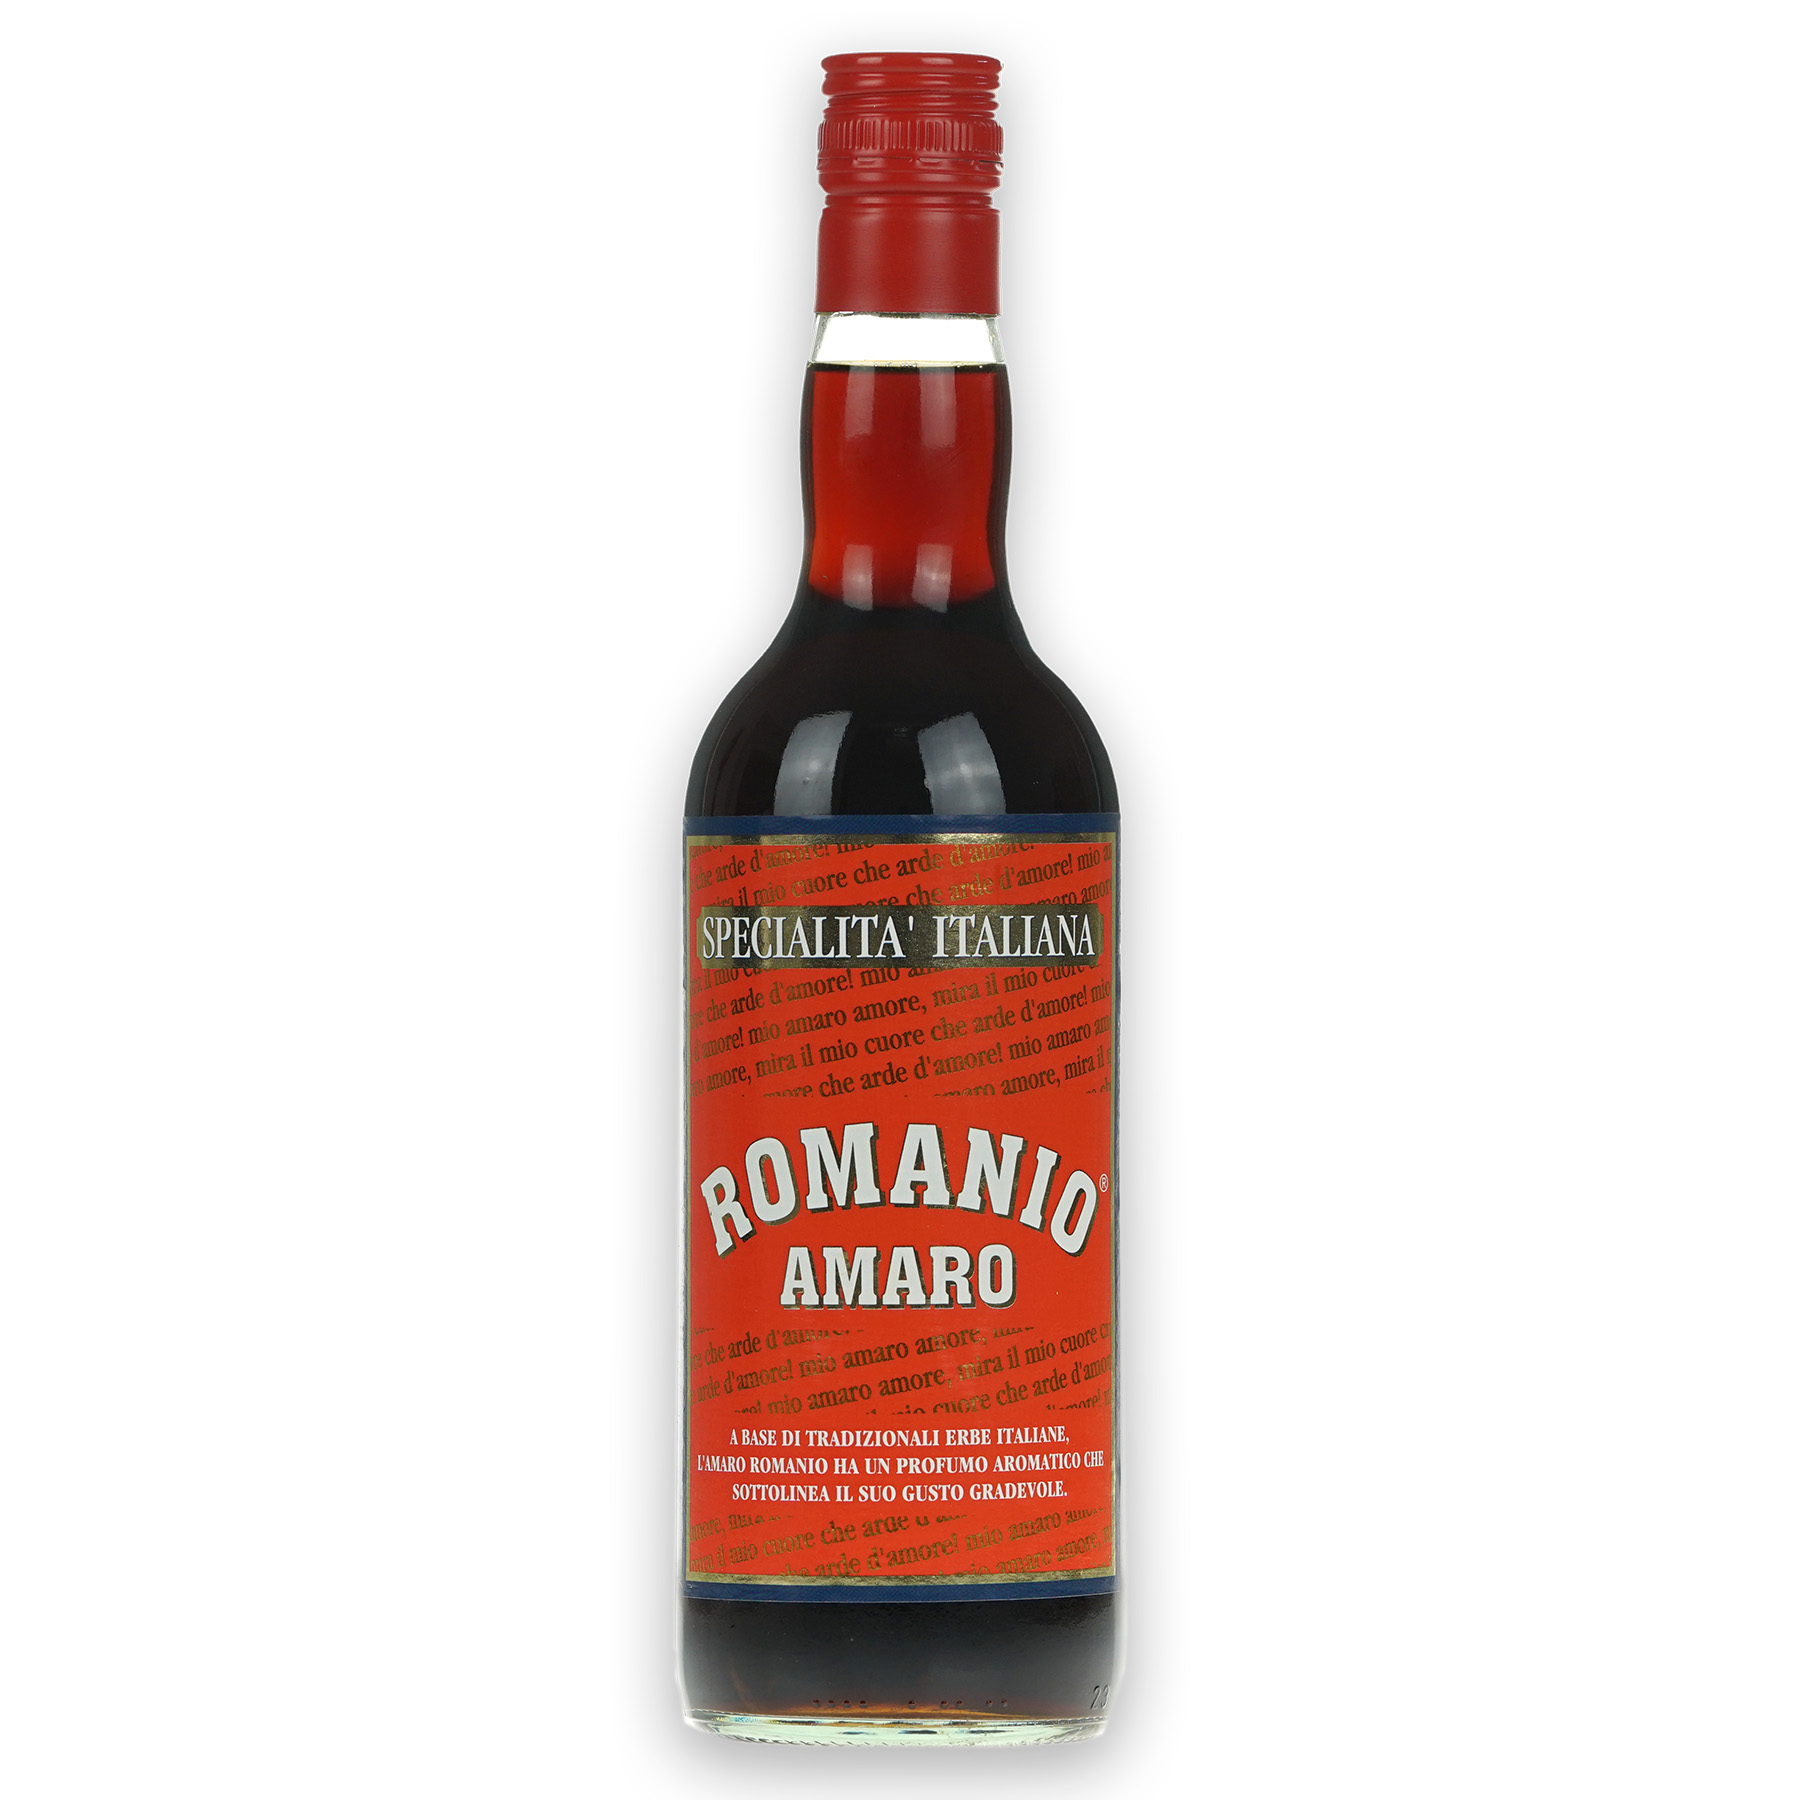 Das Bild zeigt eine Flasche Romanio Amaro auf weißem Hintergrund